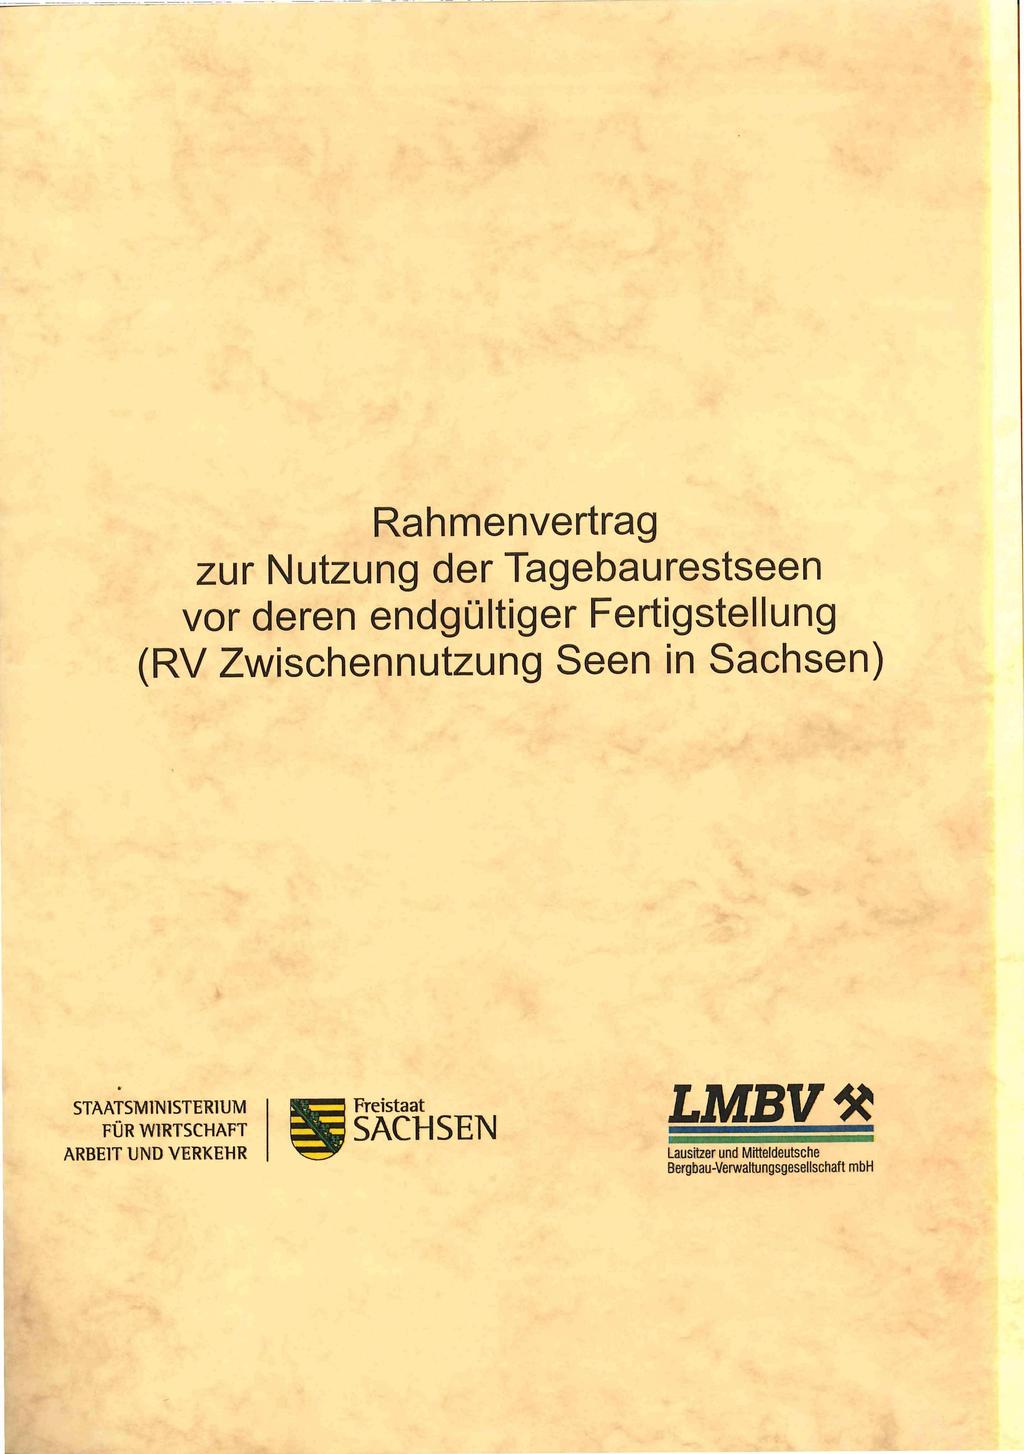 Rahmenvertrag zur Nutzung der Tagebaurestseen vor deren endgültiger Fertigstellung (RV Zwischennutzung Seen in Sachsen)